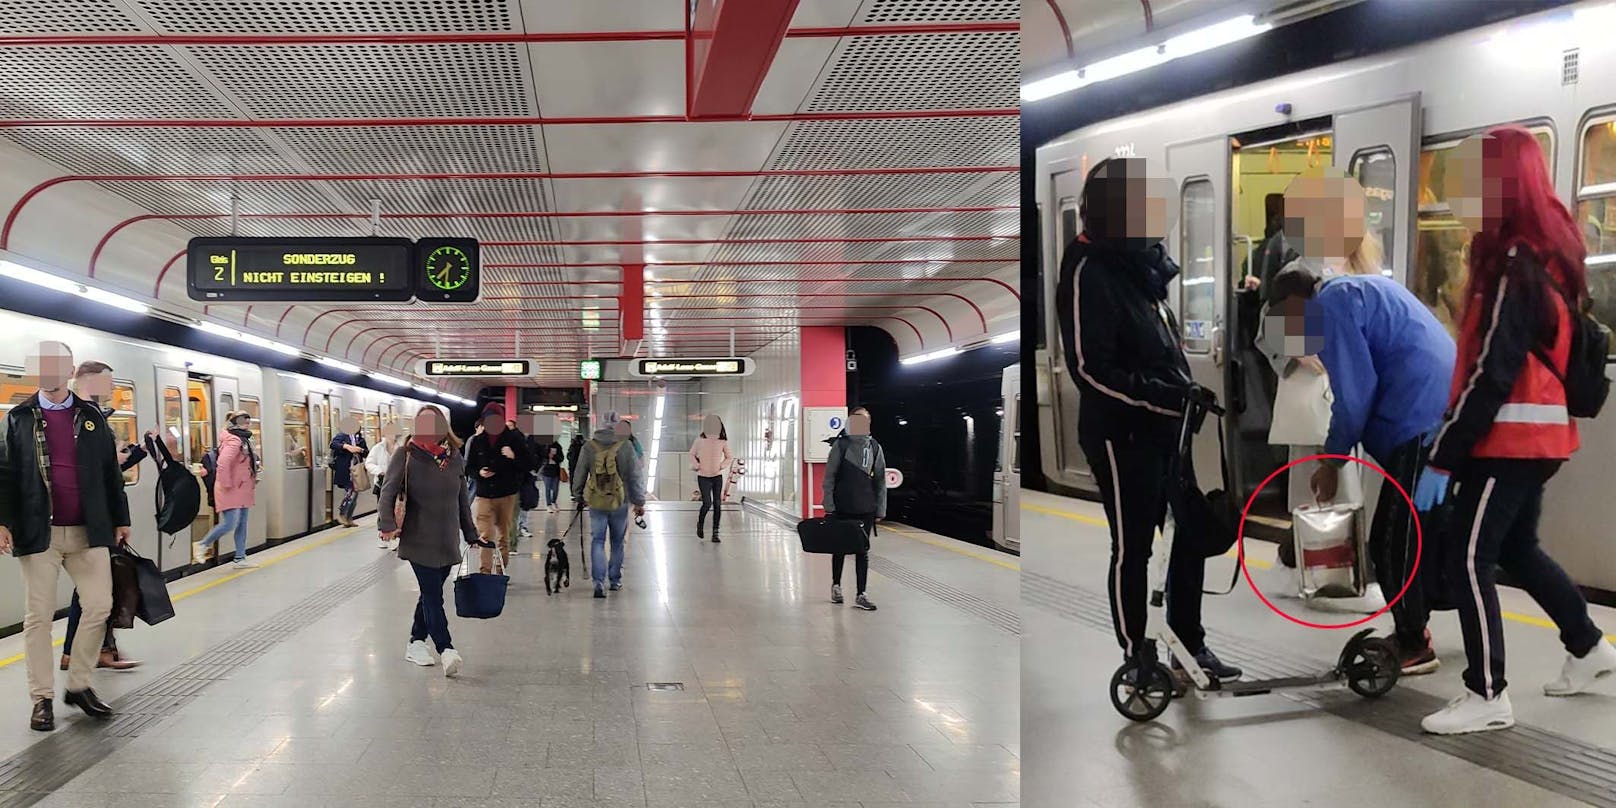 Mann mit Kanister sorgt für Aufsehen in Wiener U-Bahn